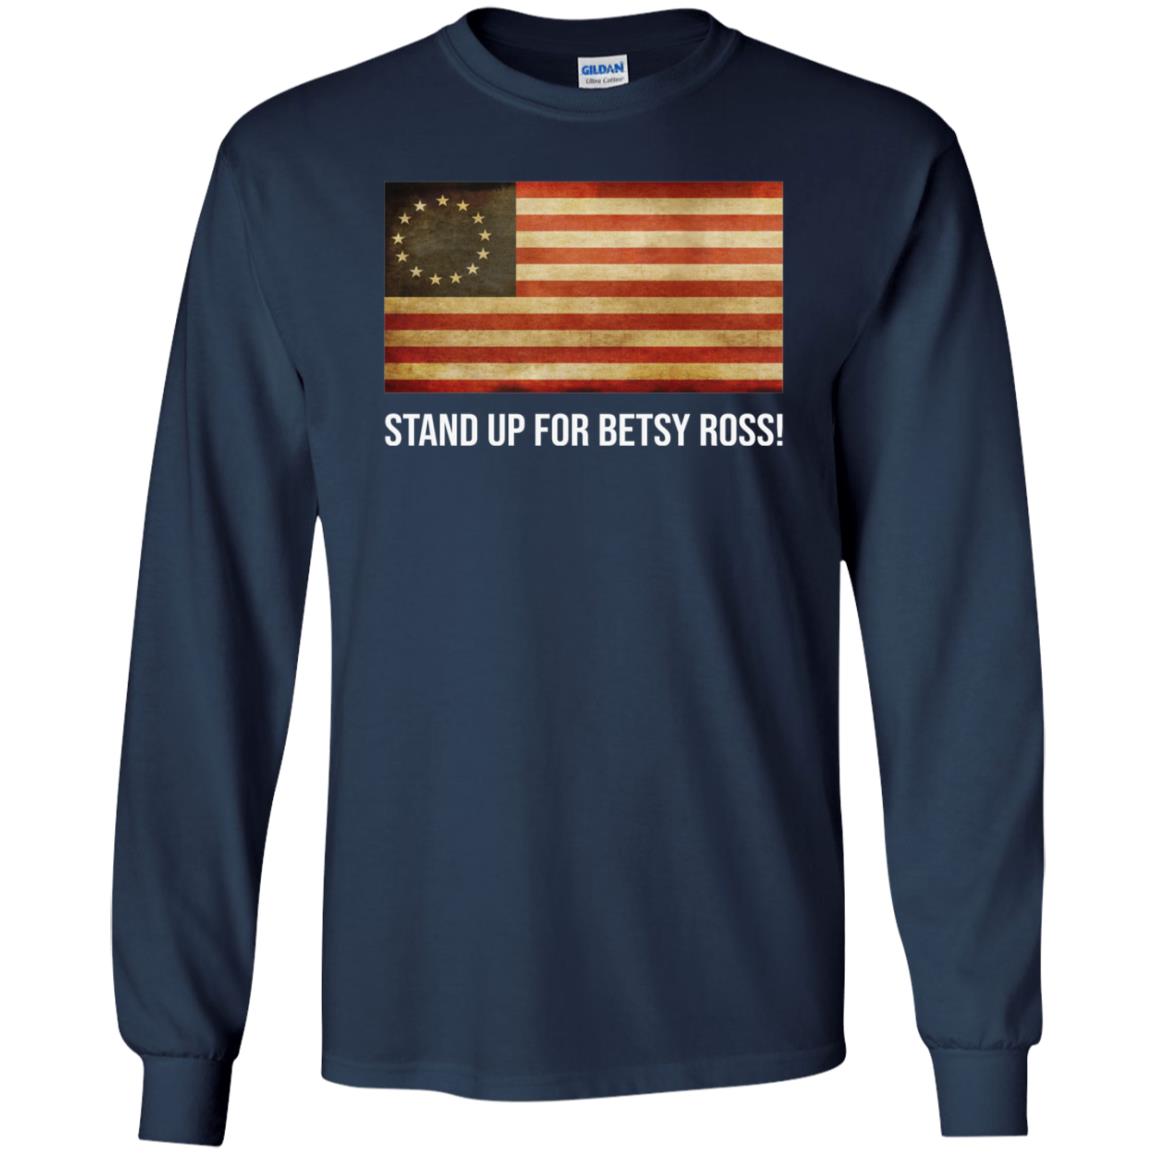 Rush Limbaugh Betsy Ross Flag Shirt, Sweatshirt